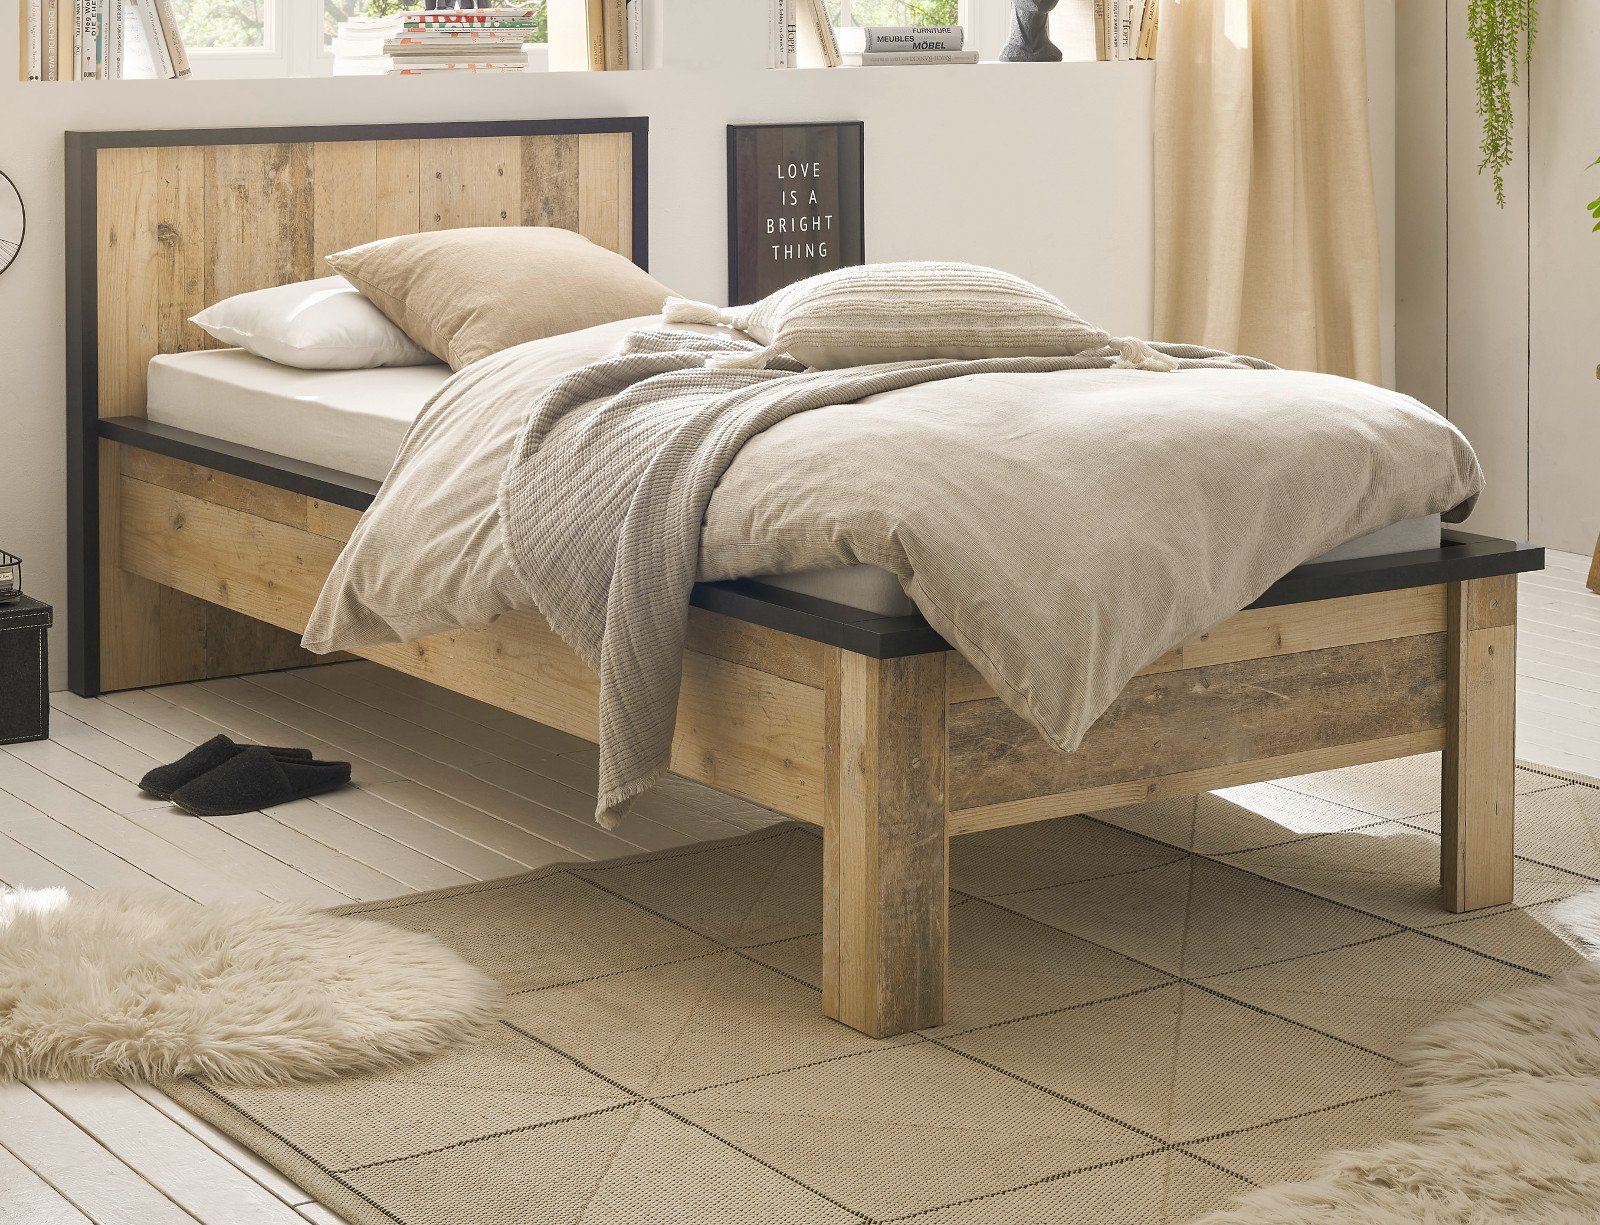 IMV Einzelbett Stove (Bett in Used Wood Und Anthrazit, Liegefläche 90 x 200  cm), höhenverstellbar